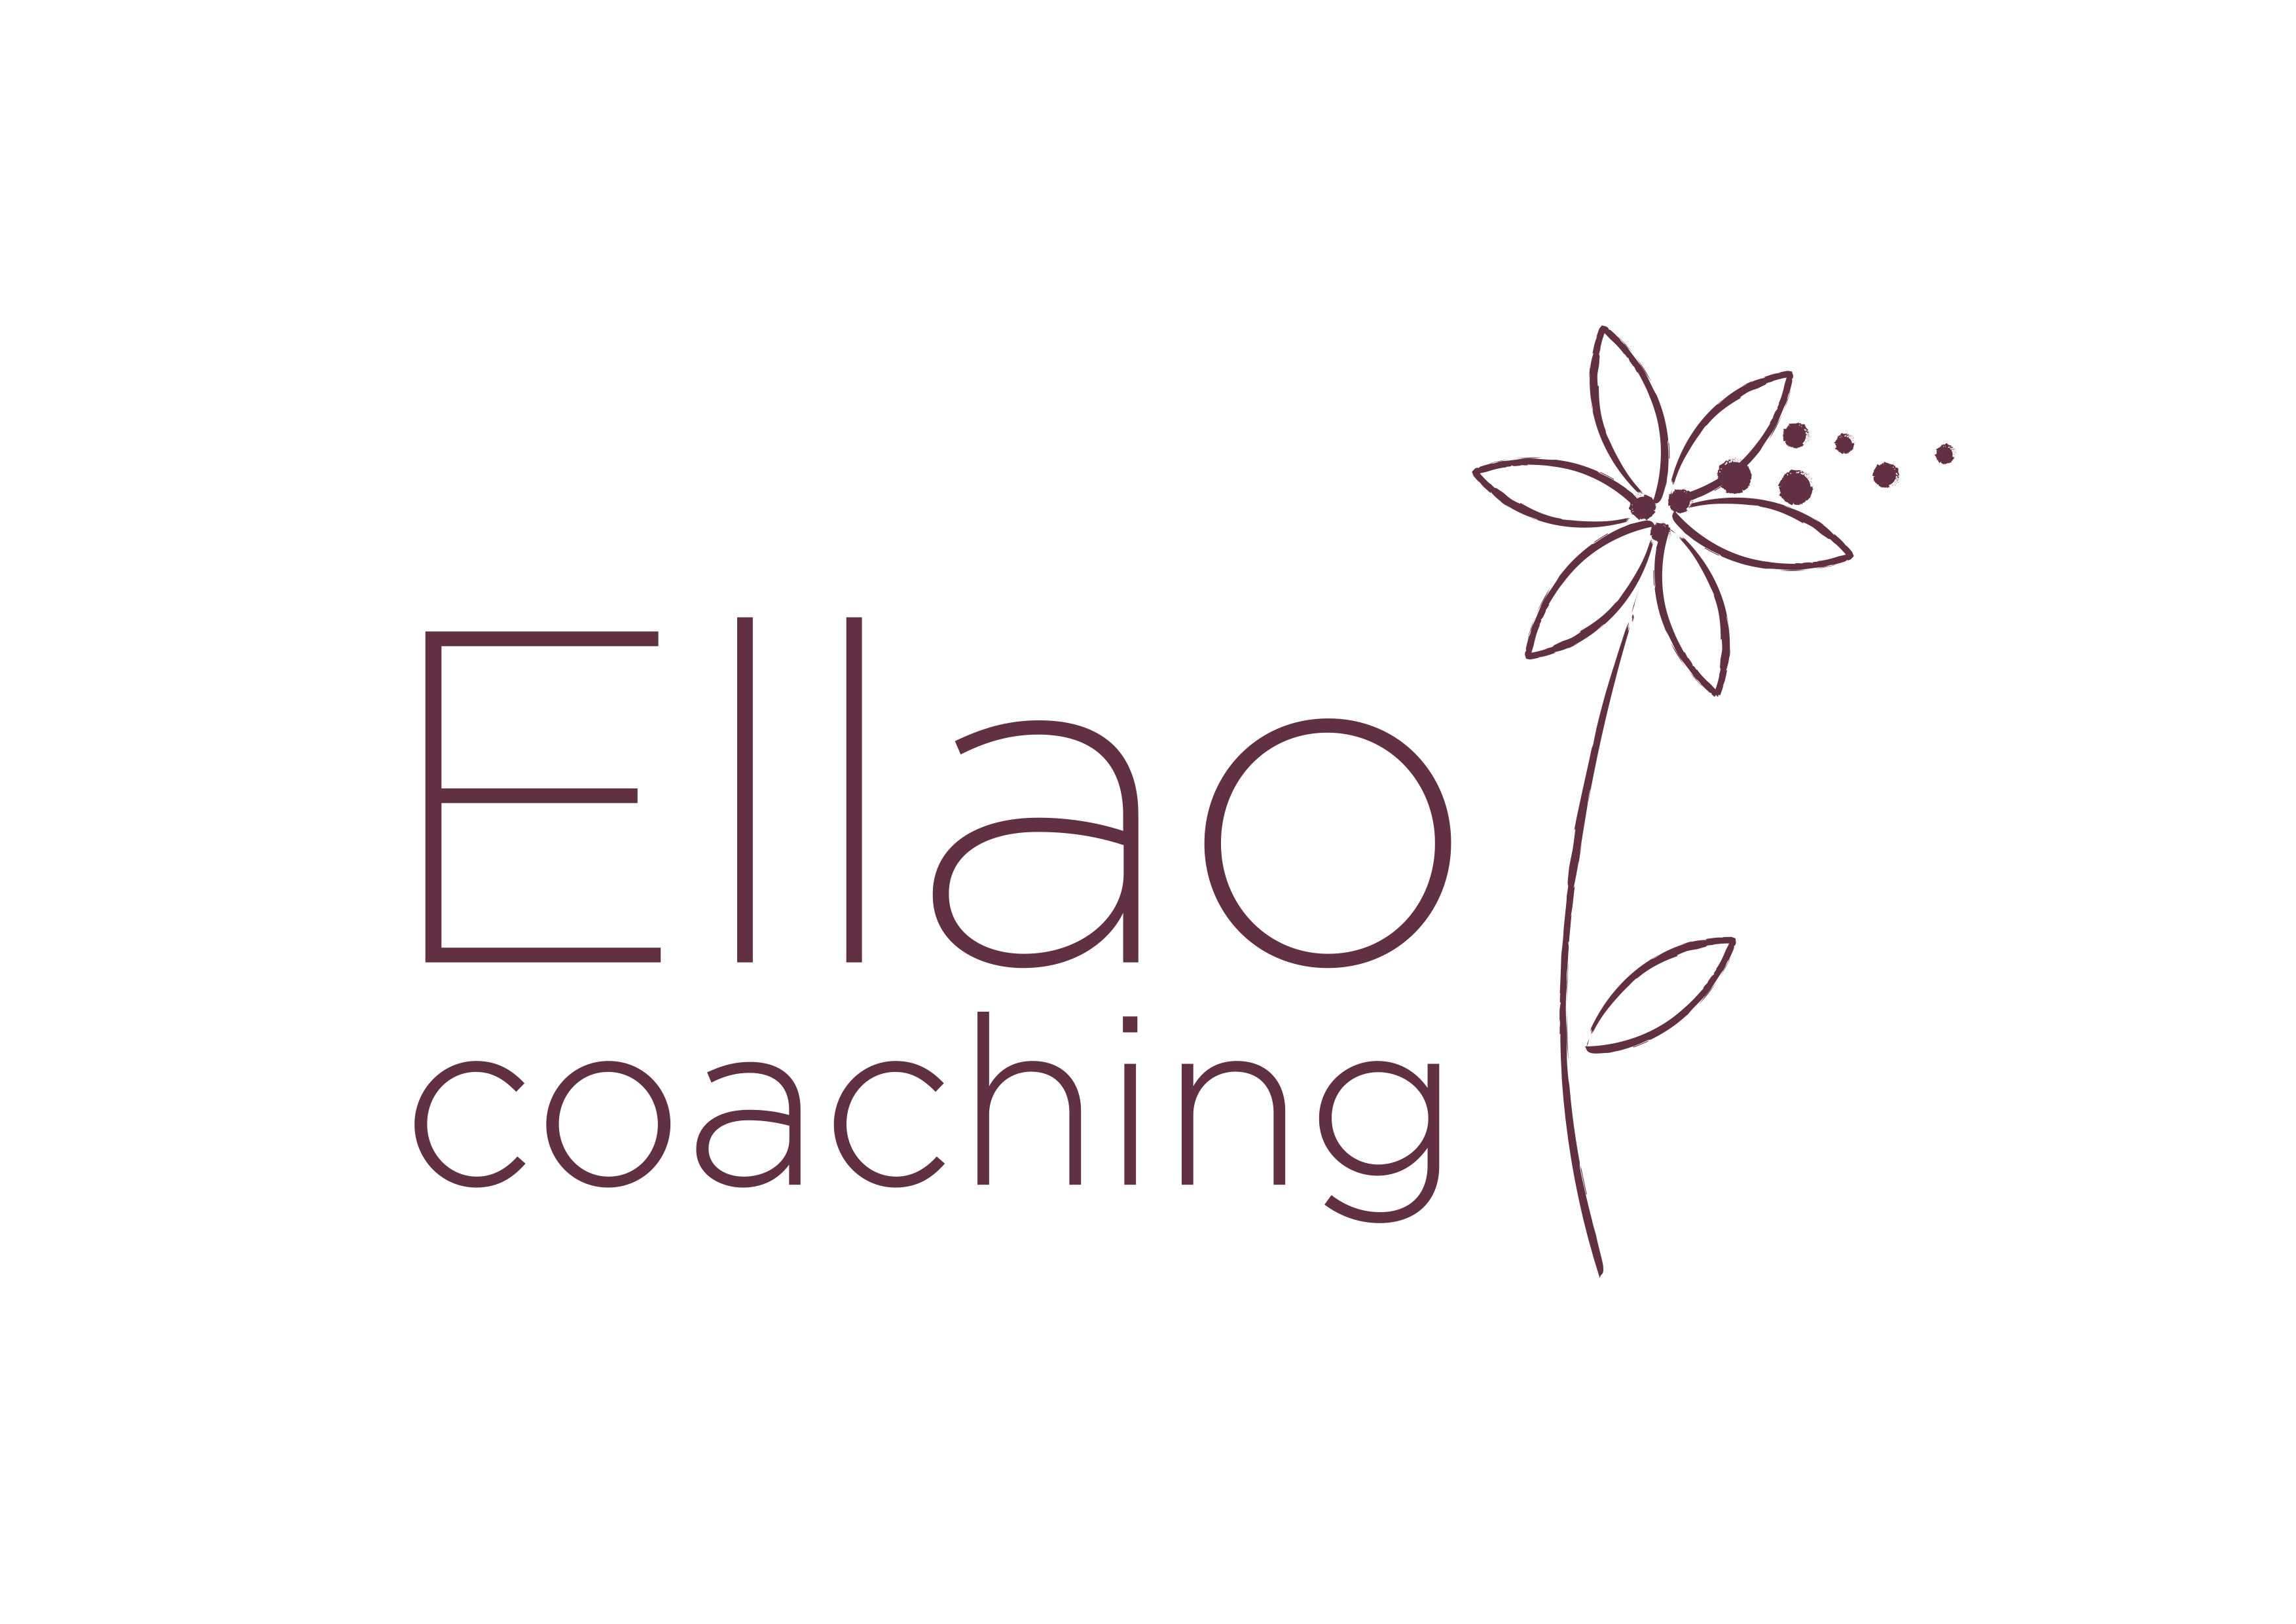 Ellao coaching